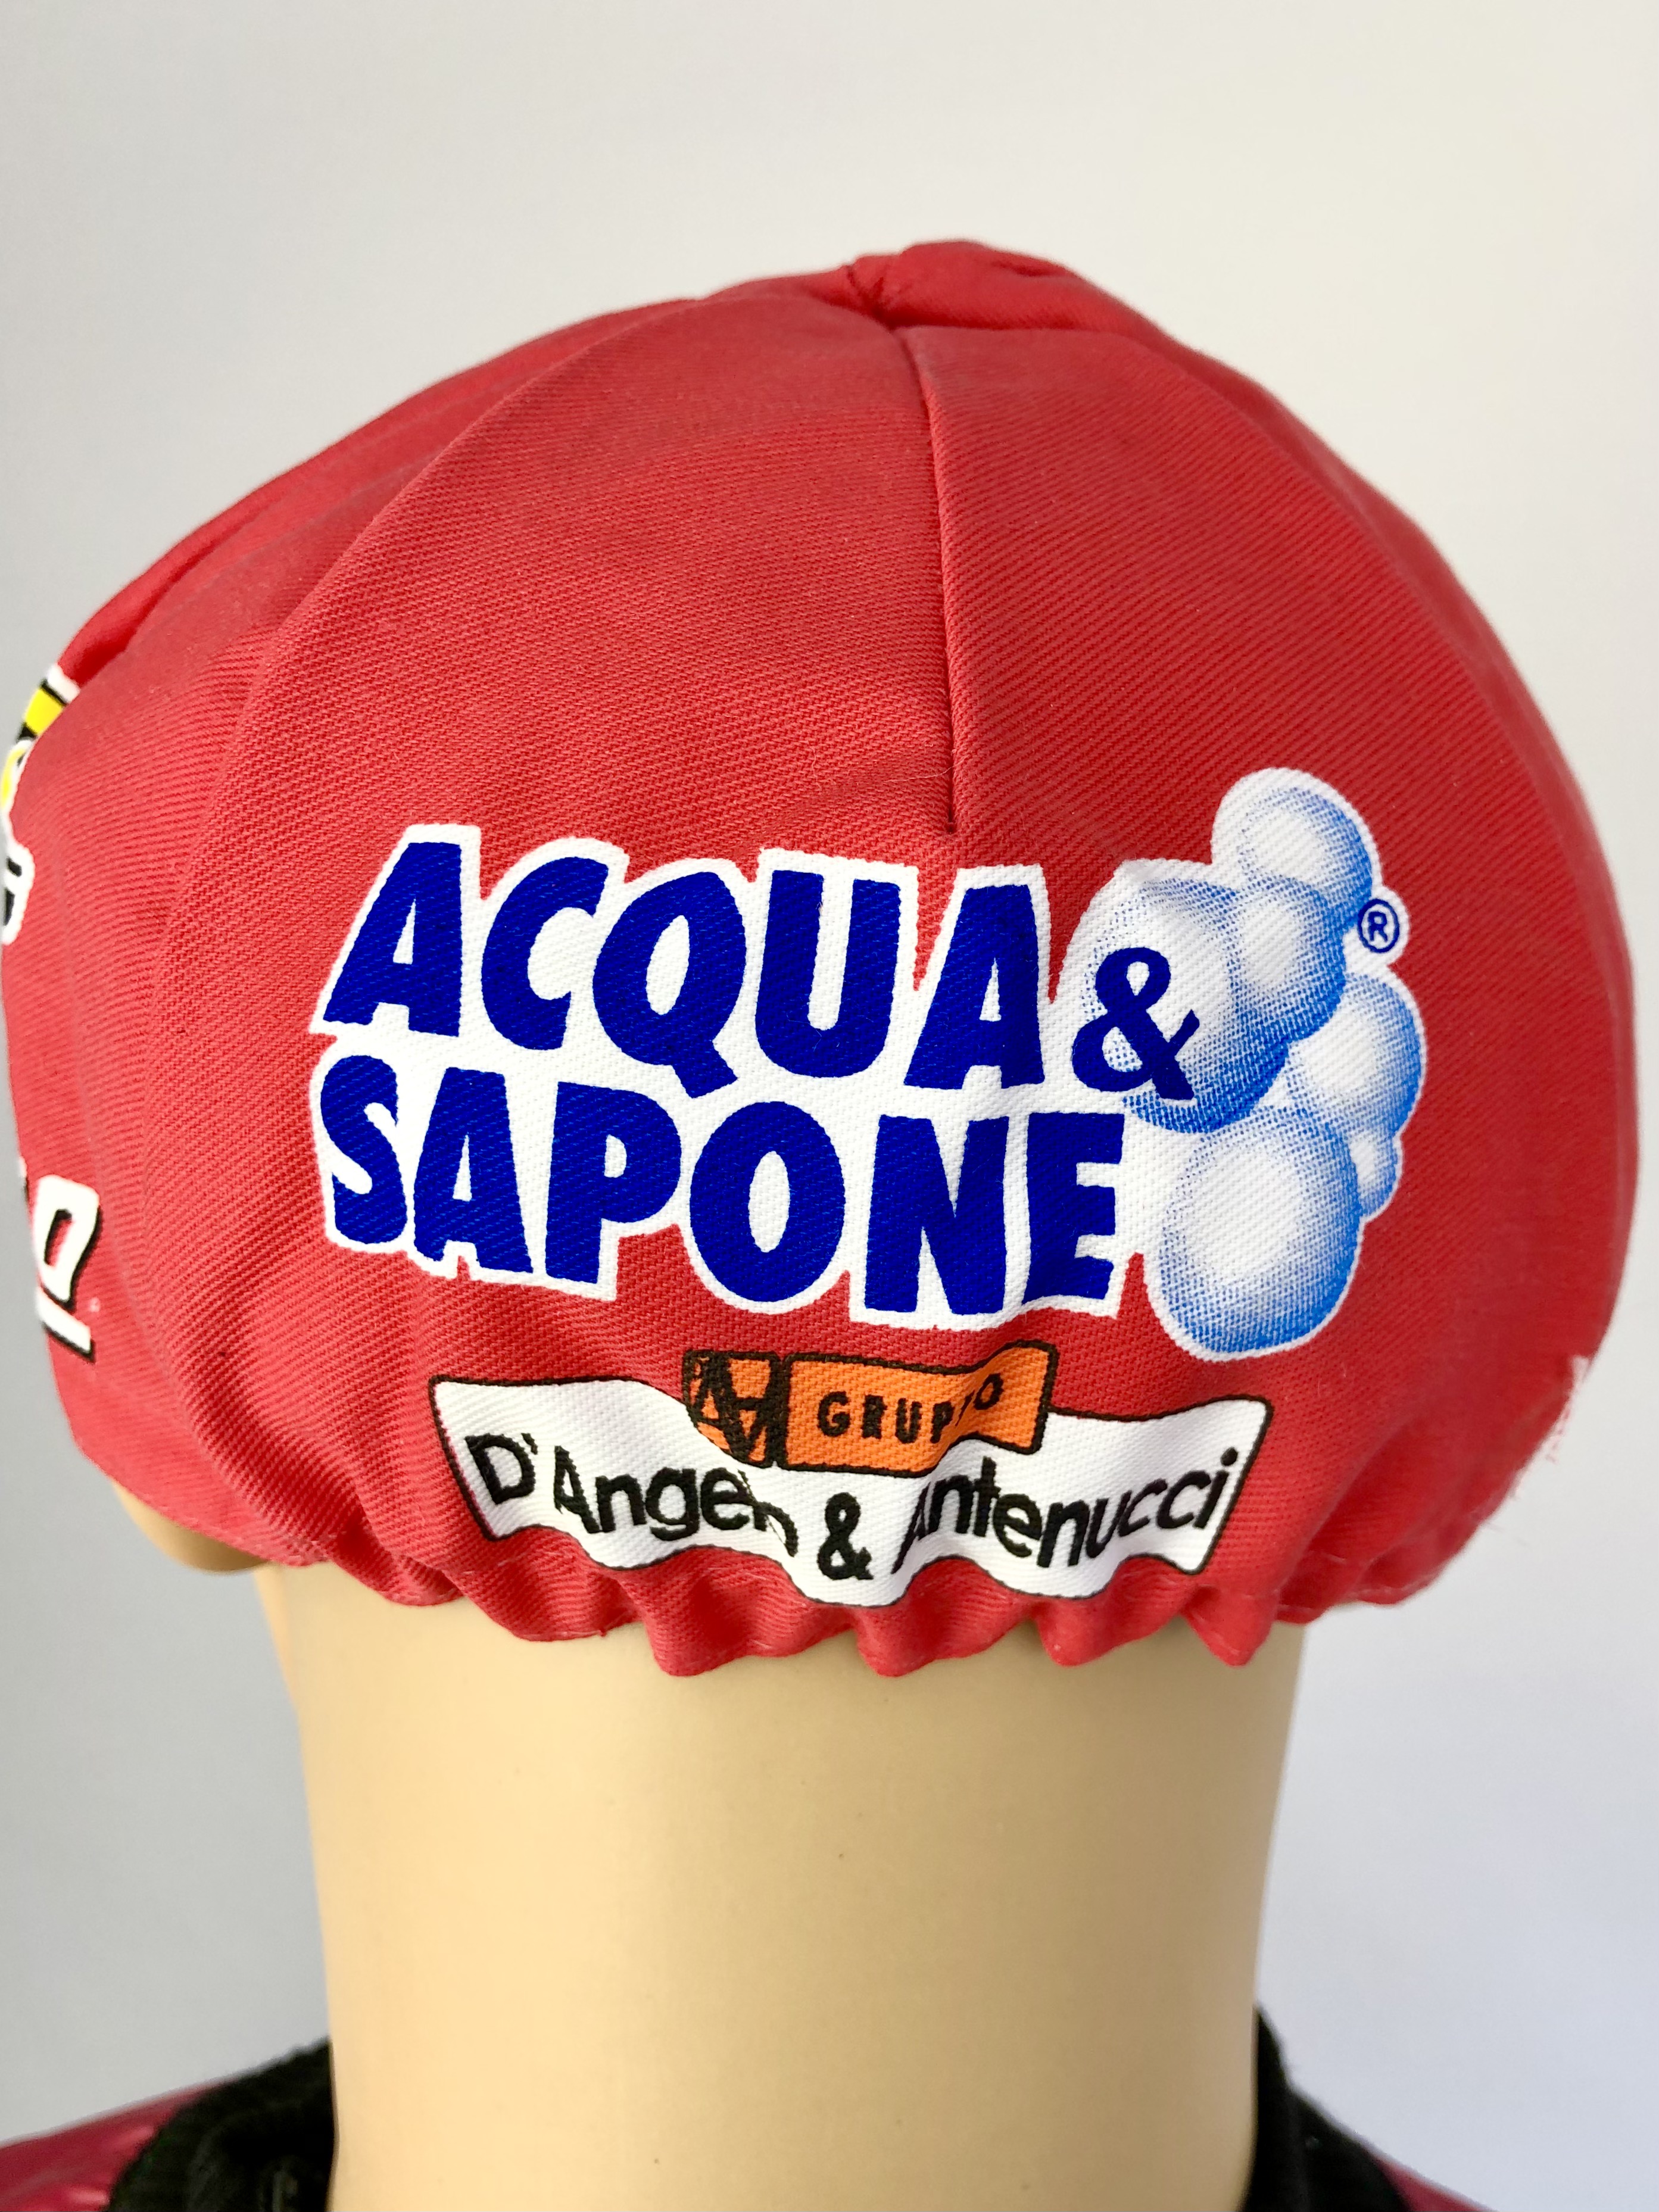 La Casquette Team  Acqua & Sapone - D´Angelo & Antenucci